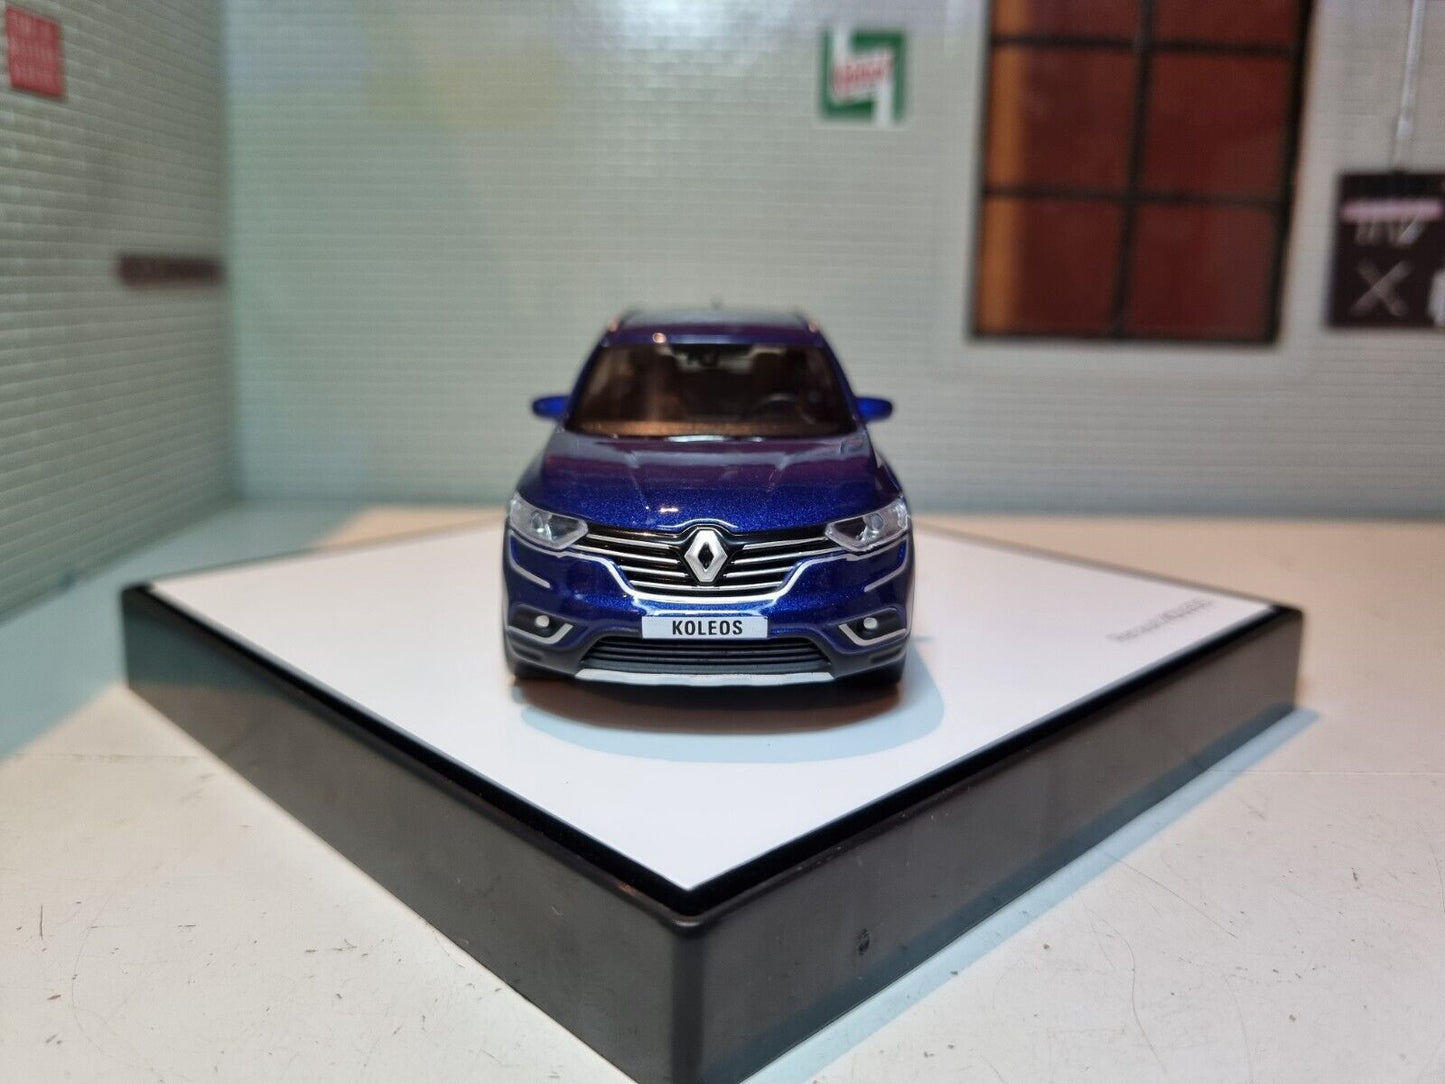 Renault 2019 Koleos Ex-Dealership Model 1:43